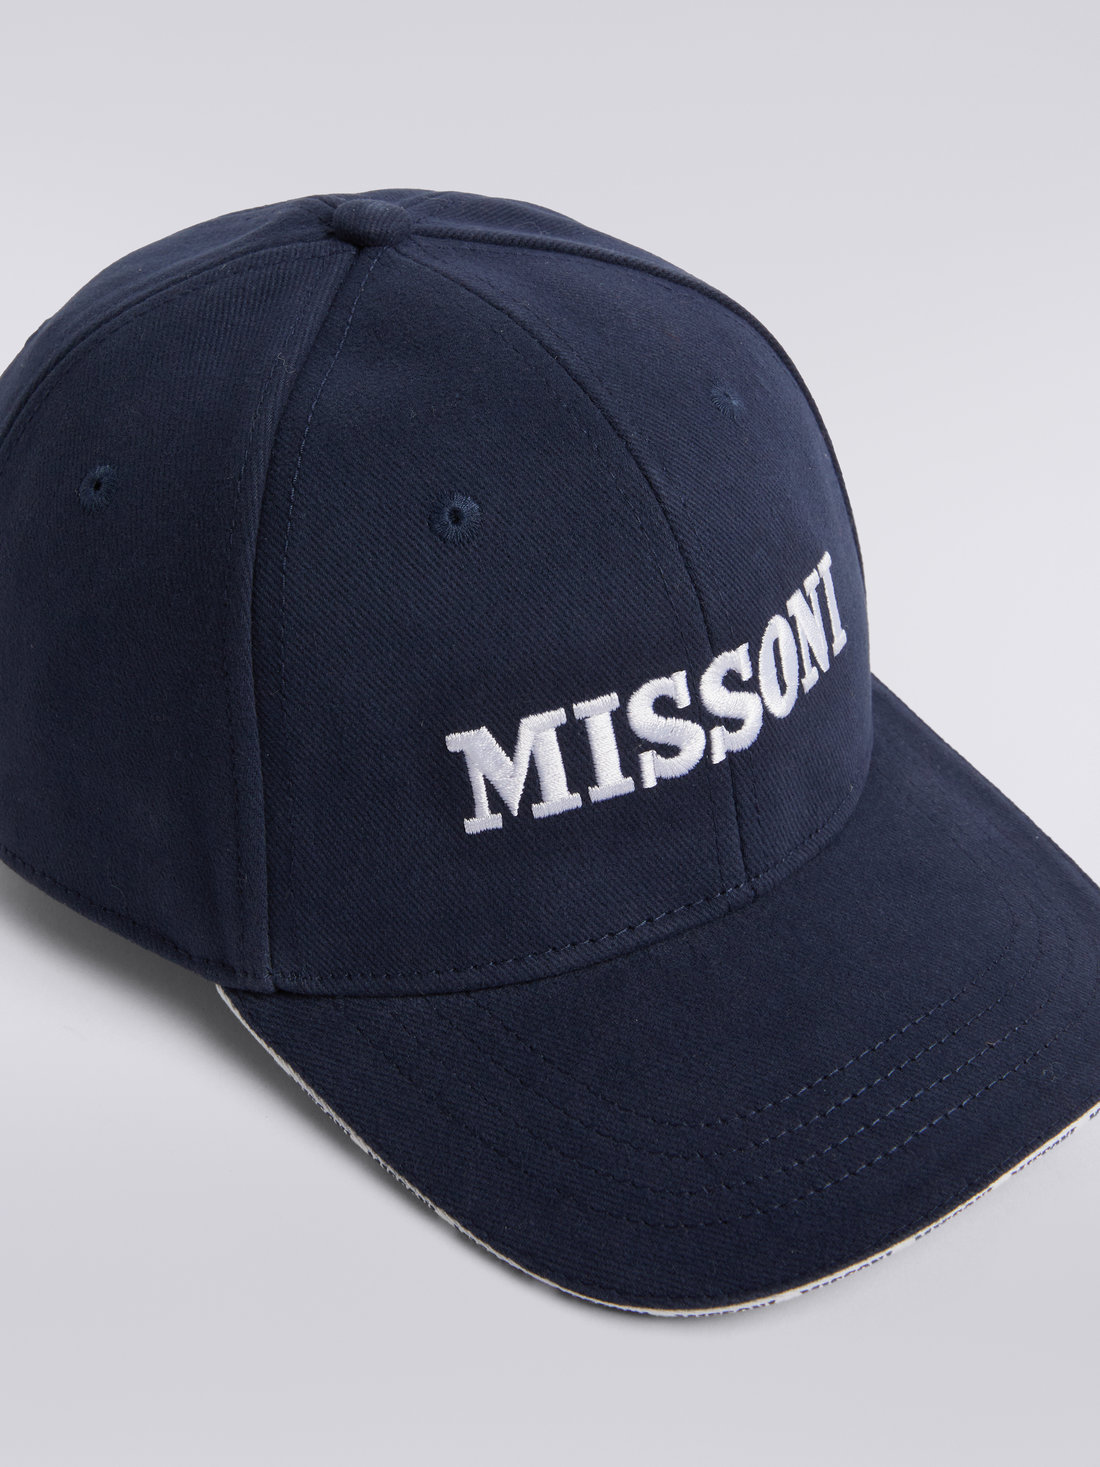 Cotton baseball cap with logo, Multicoloured  - 8053147023175 - 2